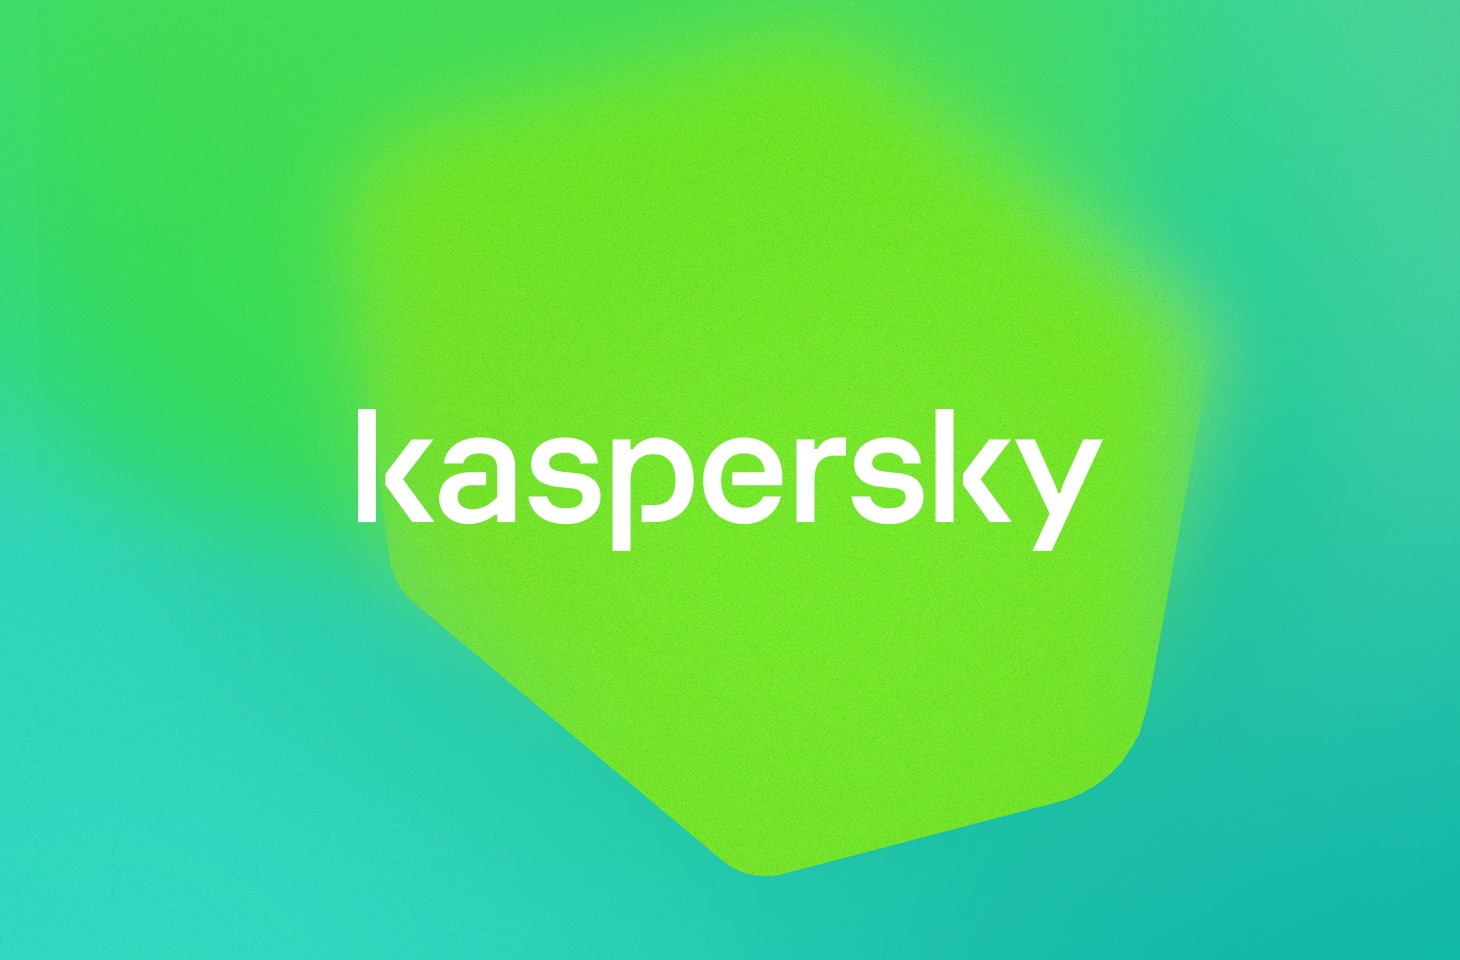 kaspersky 2019 full crack